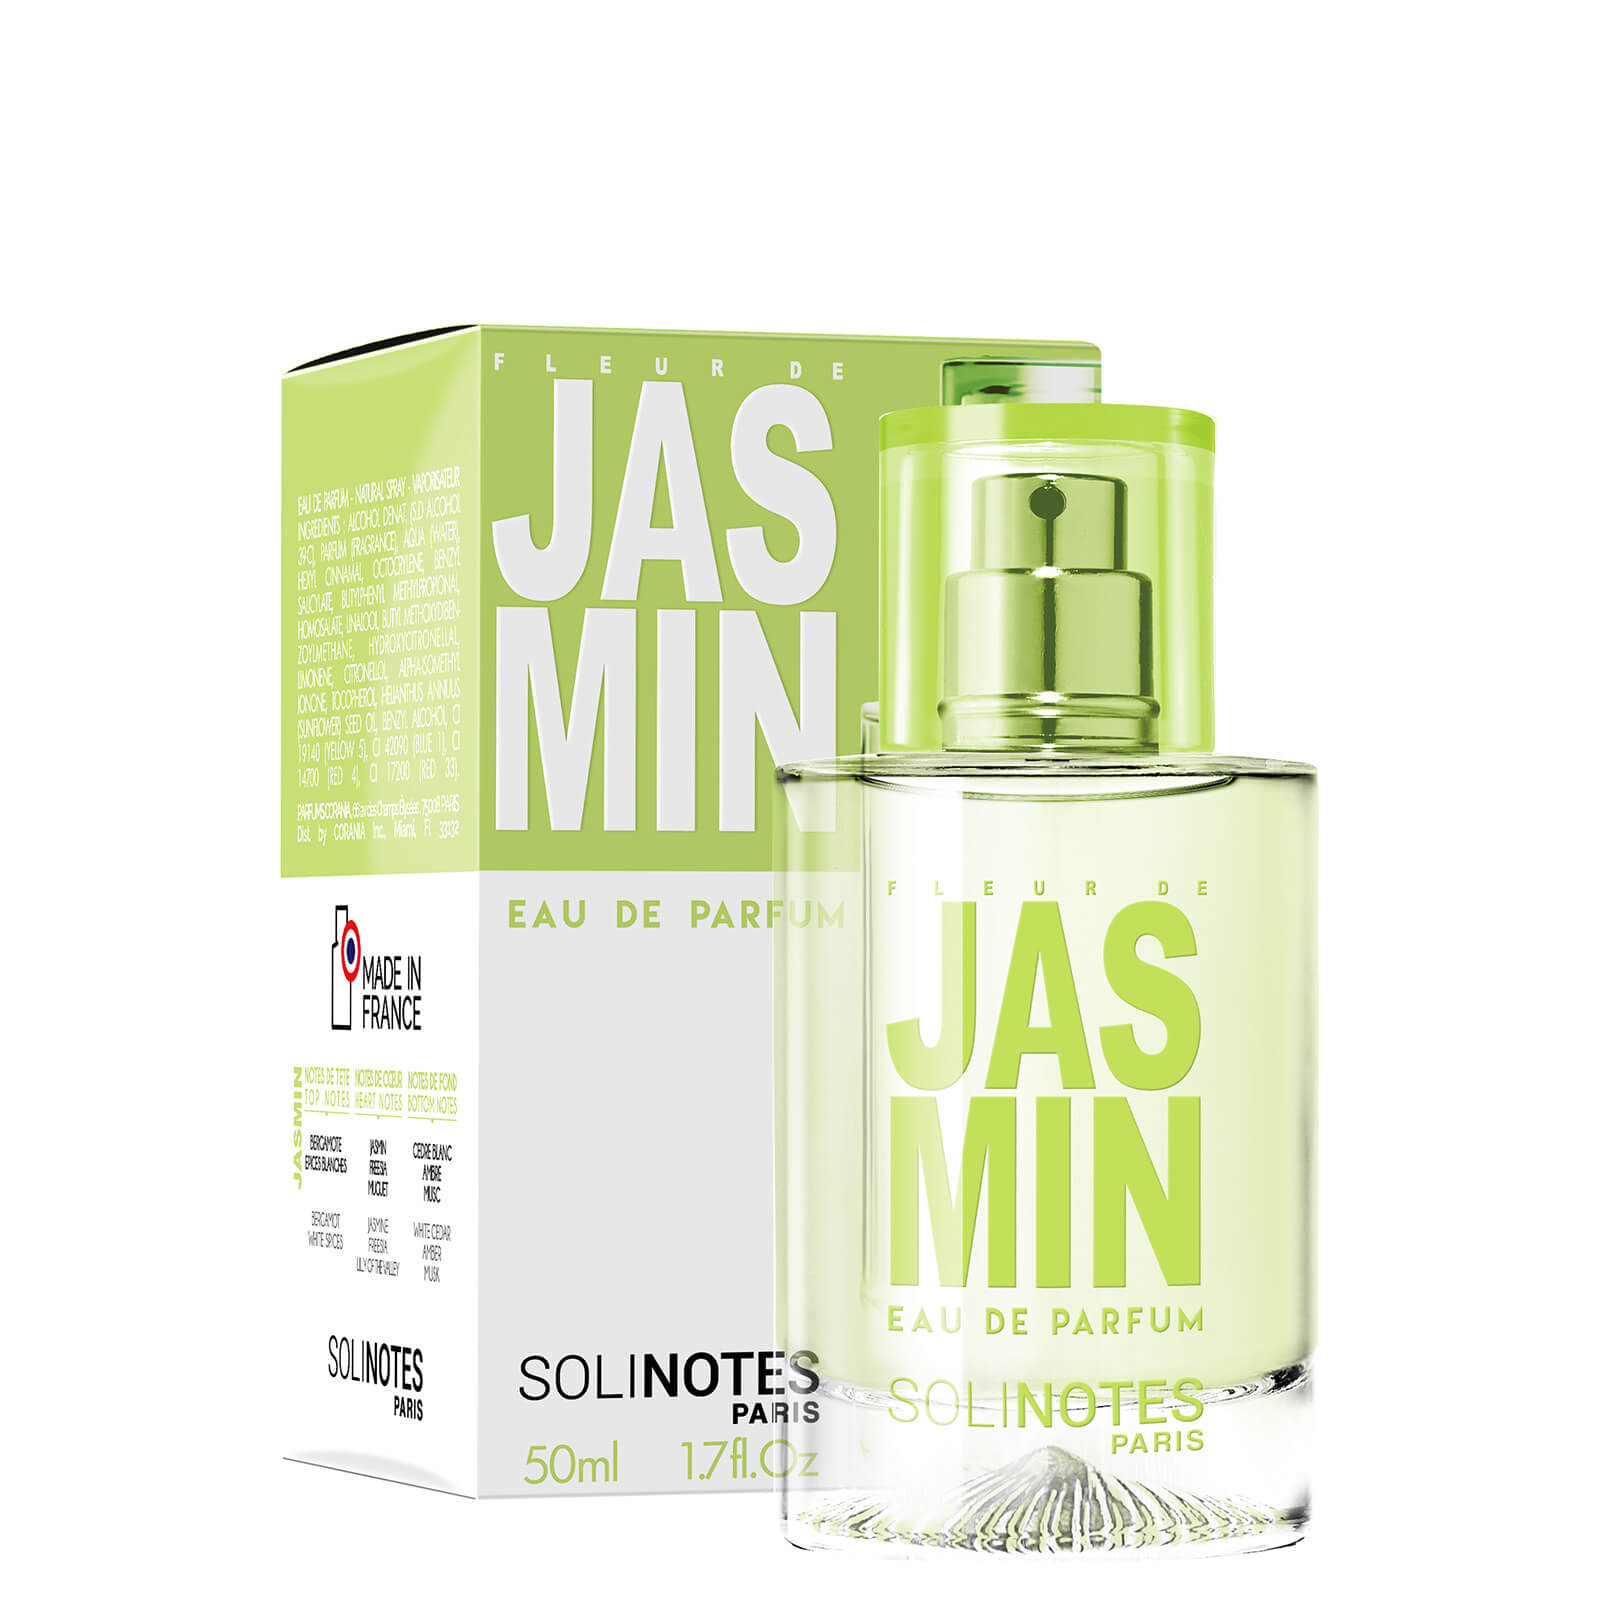 Solinotes Eau De Parfum - Jasmine 1.7 oz